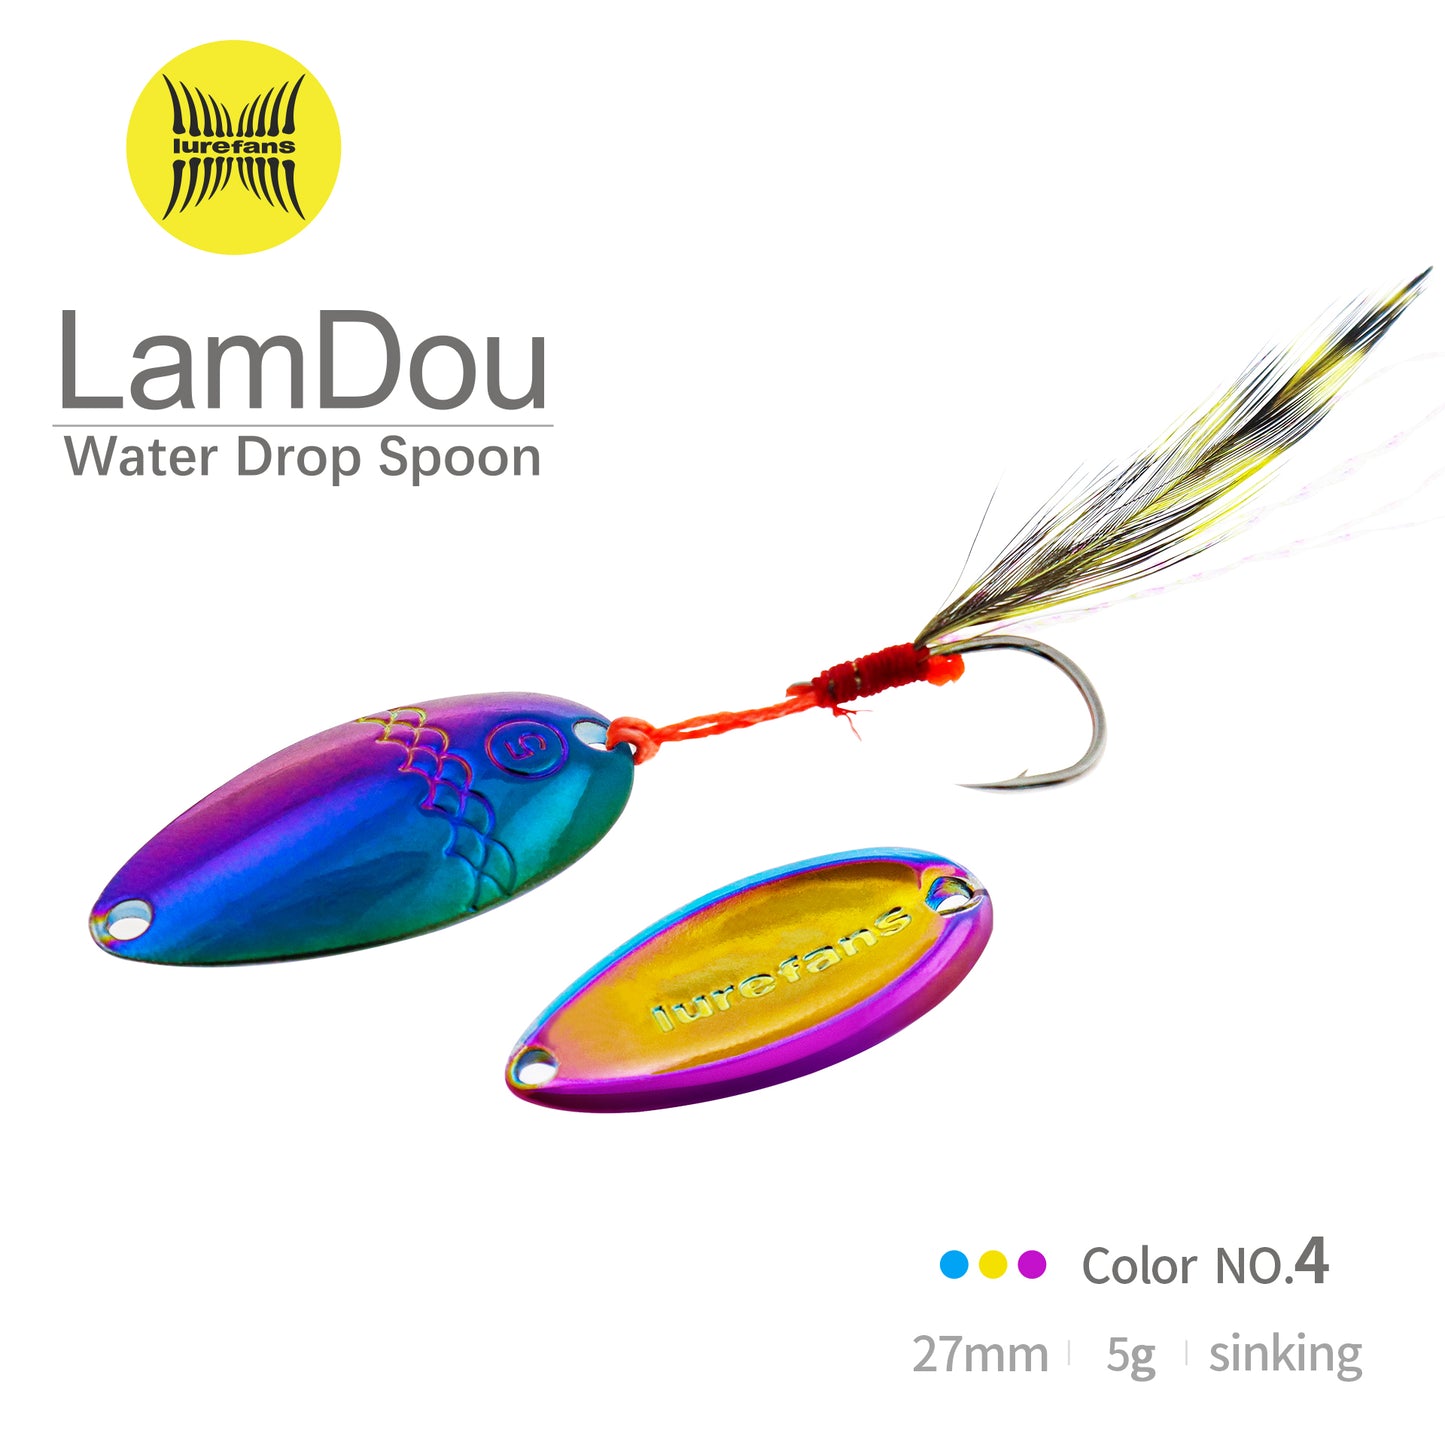 LAMDOU-Water Drop Spoon 27mm (5g)